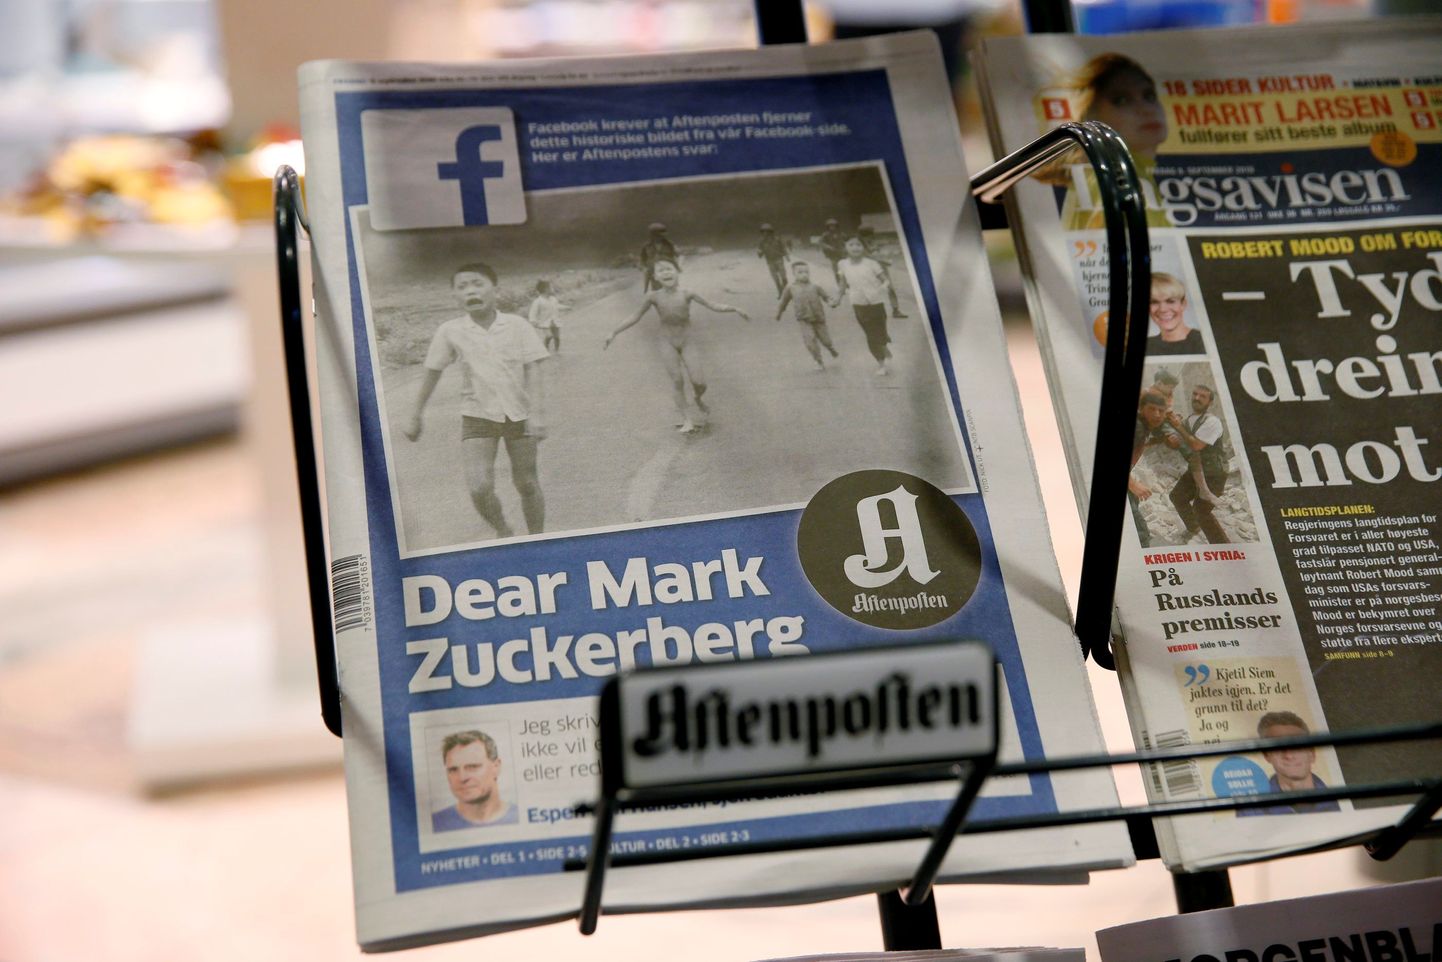 Norra suurim päevaleht Aftenposten avaldas reedel avaliku kirja Mark Zuckerbergile, kus süüditas sotsiaalmeedia keskkonda Facebook sõnavabaduse rikkumises.